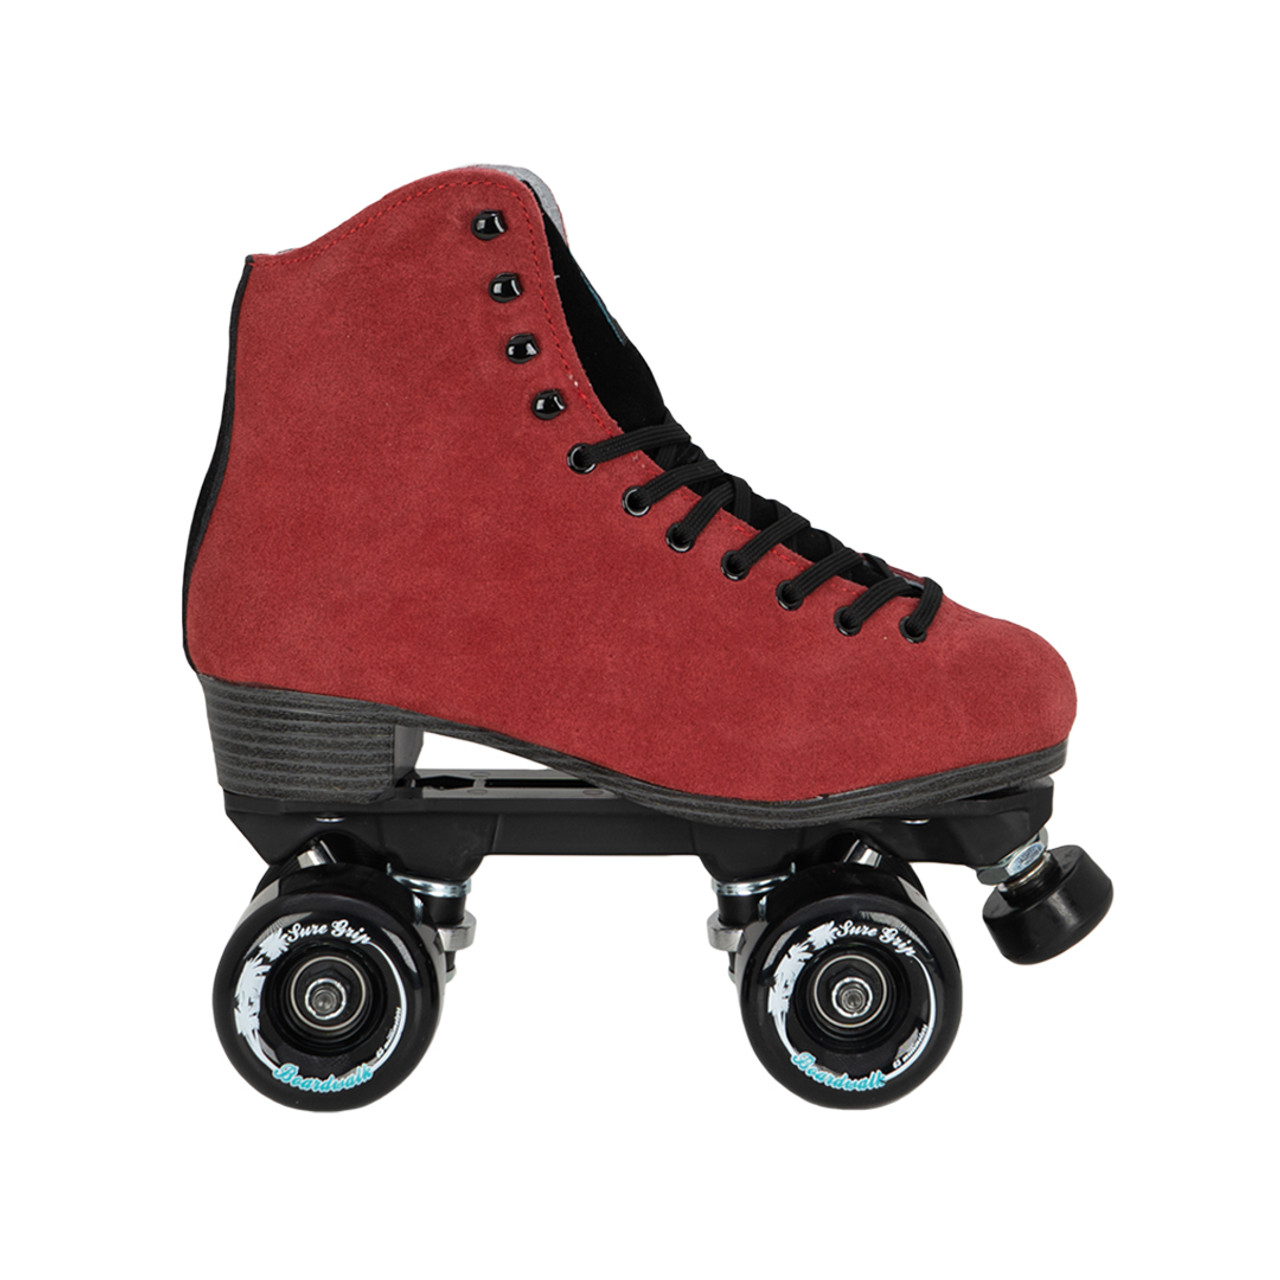 Boardwalk Red and Black Suede Roller Skates